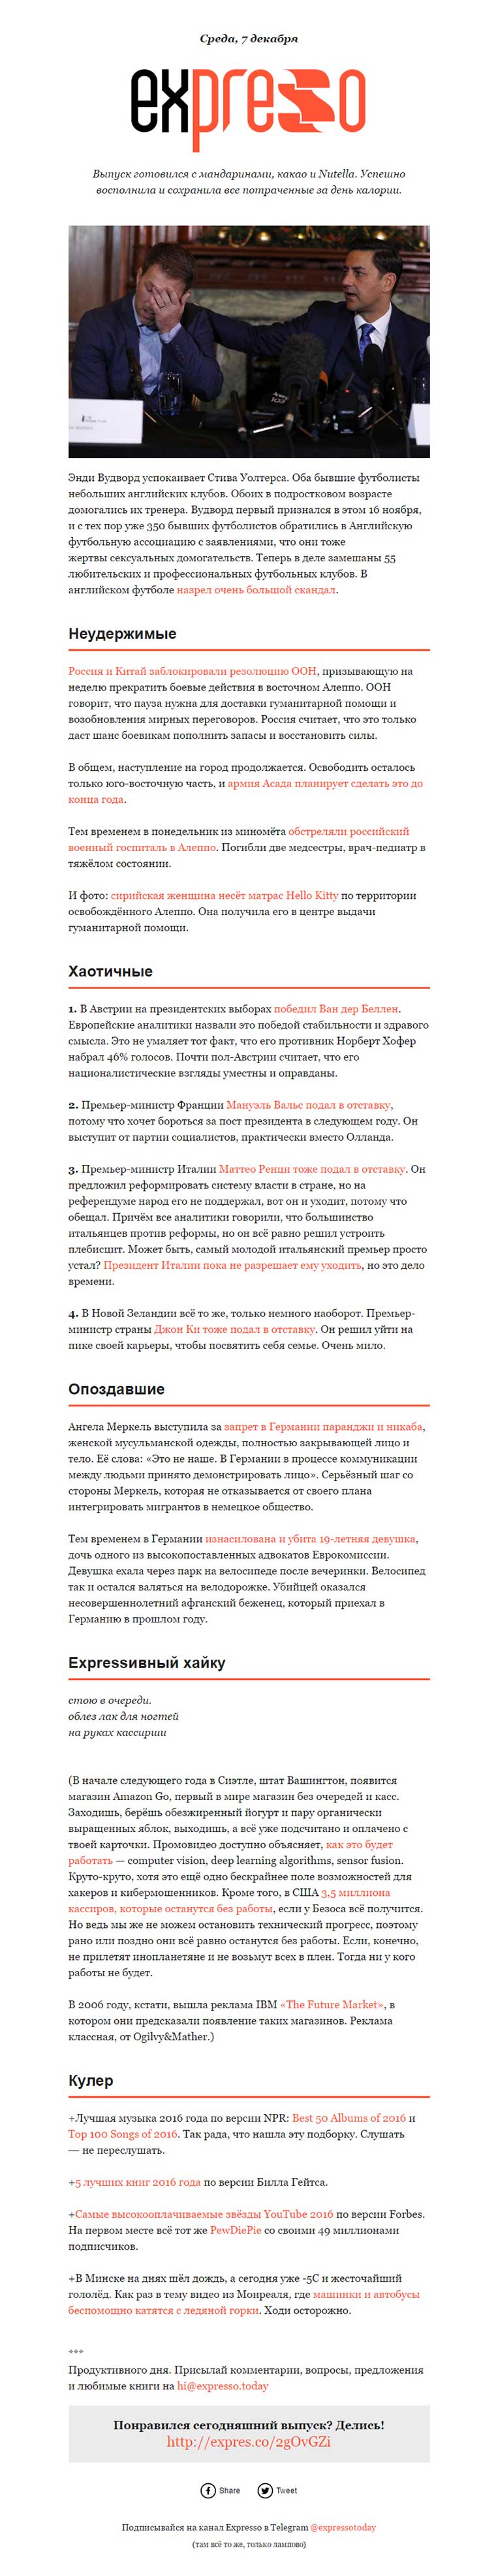 7 лучших рассылок рунета, с которых стоит брать пример